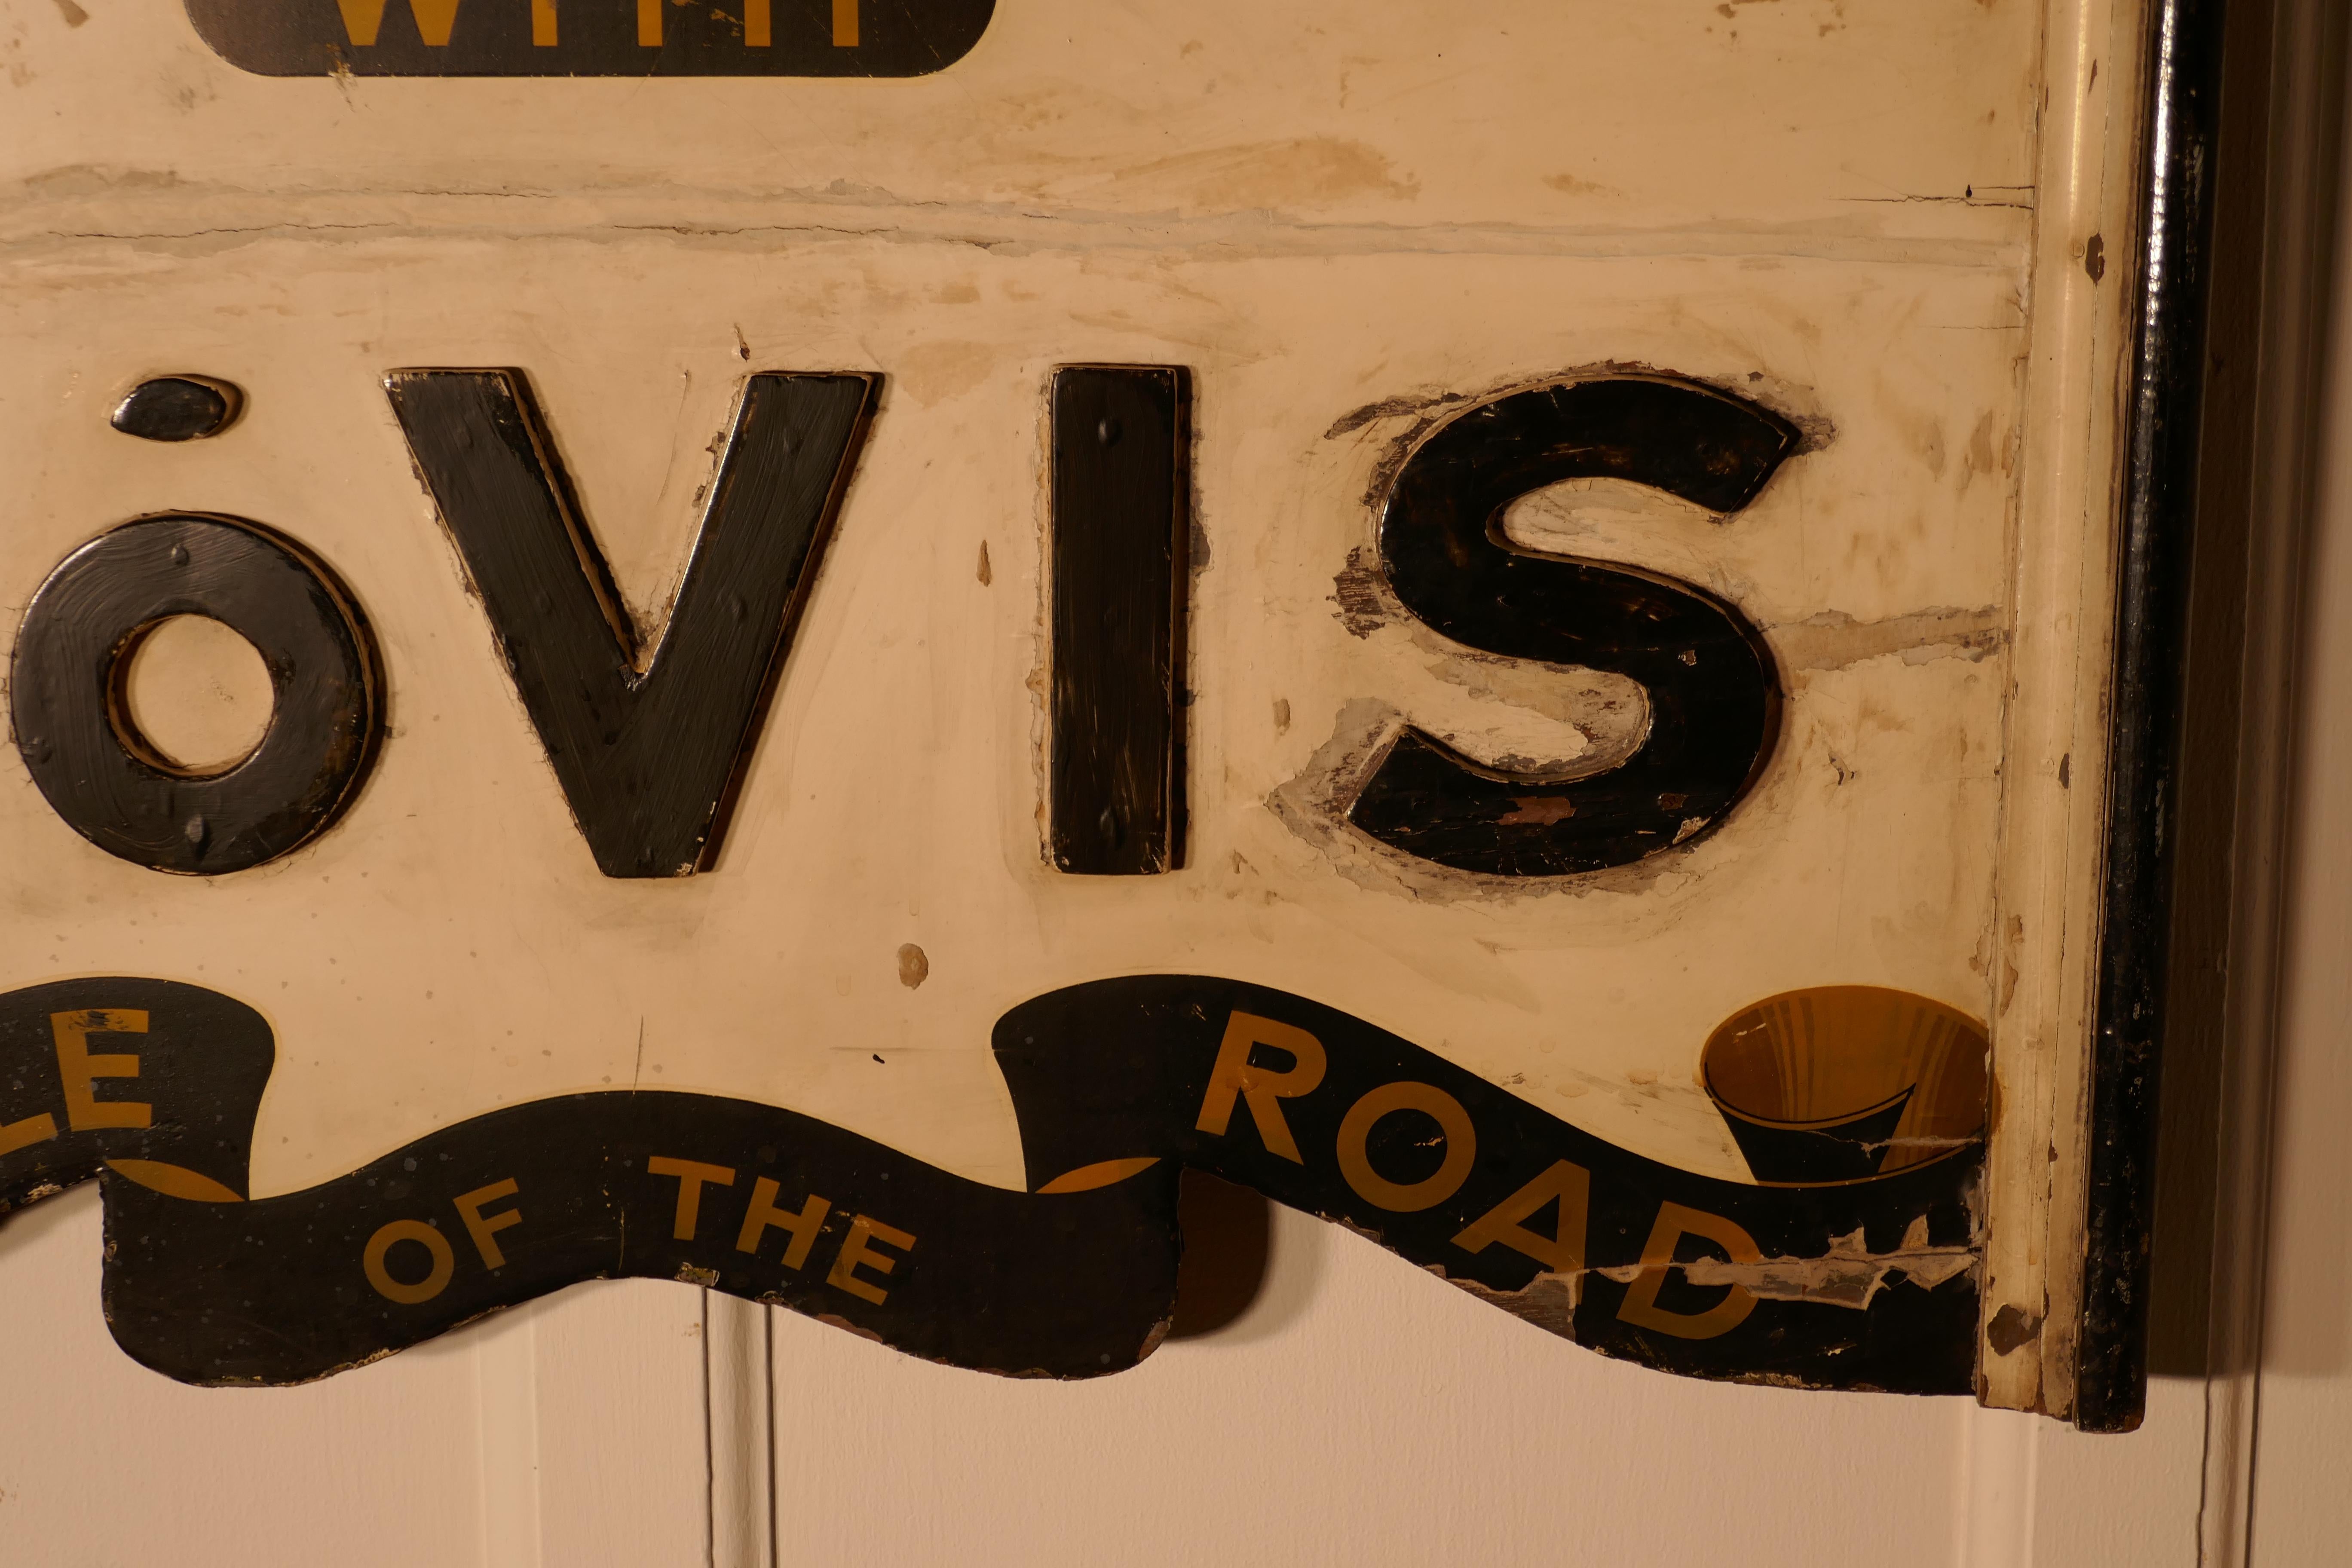 vintage hovis sign